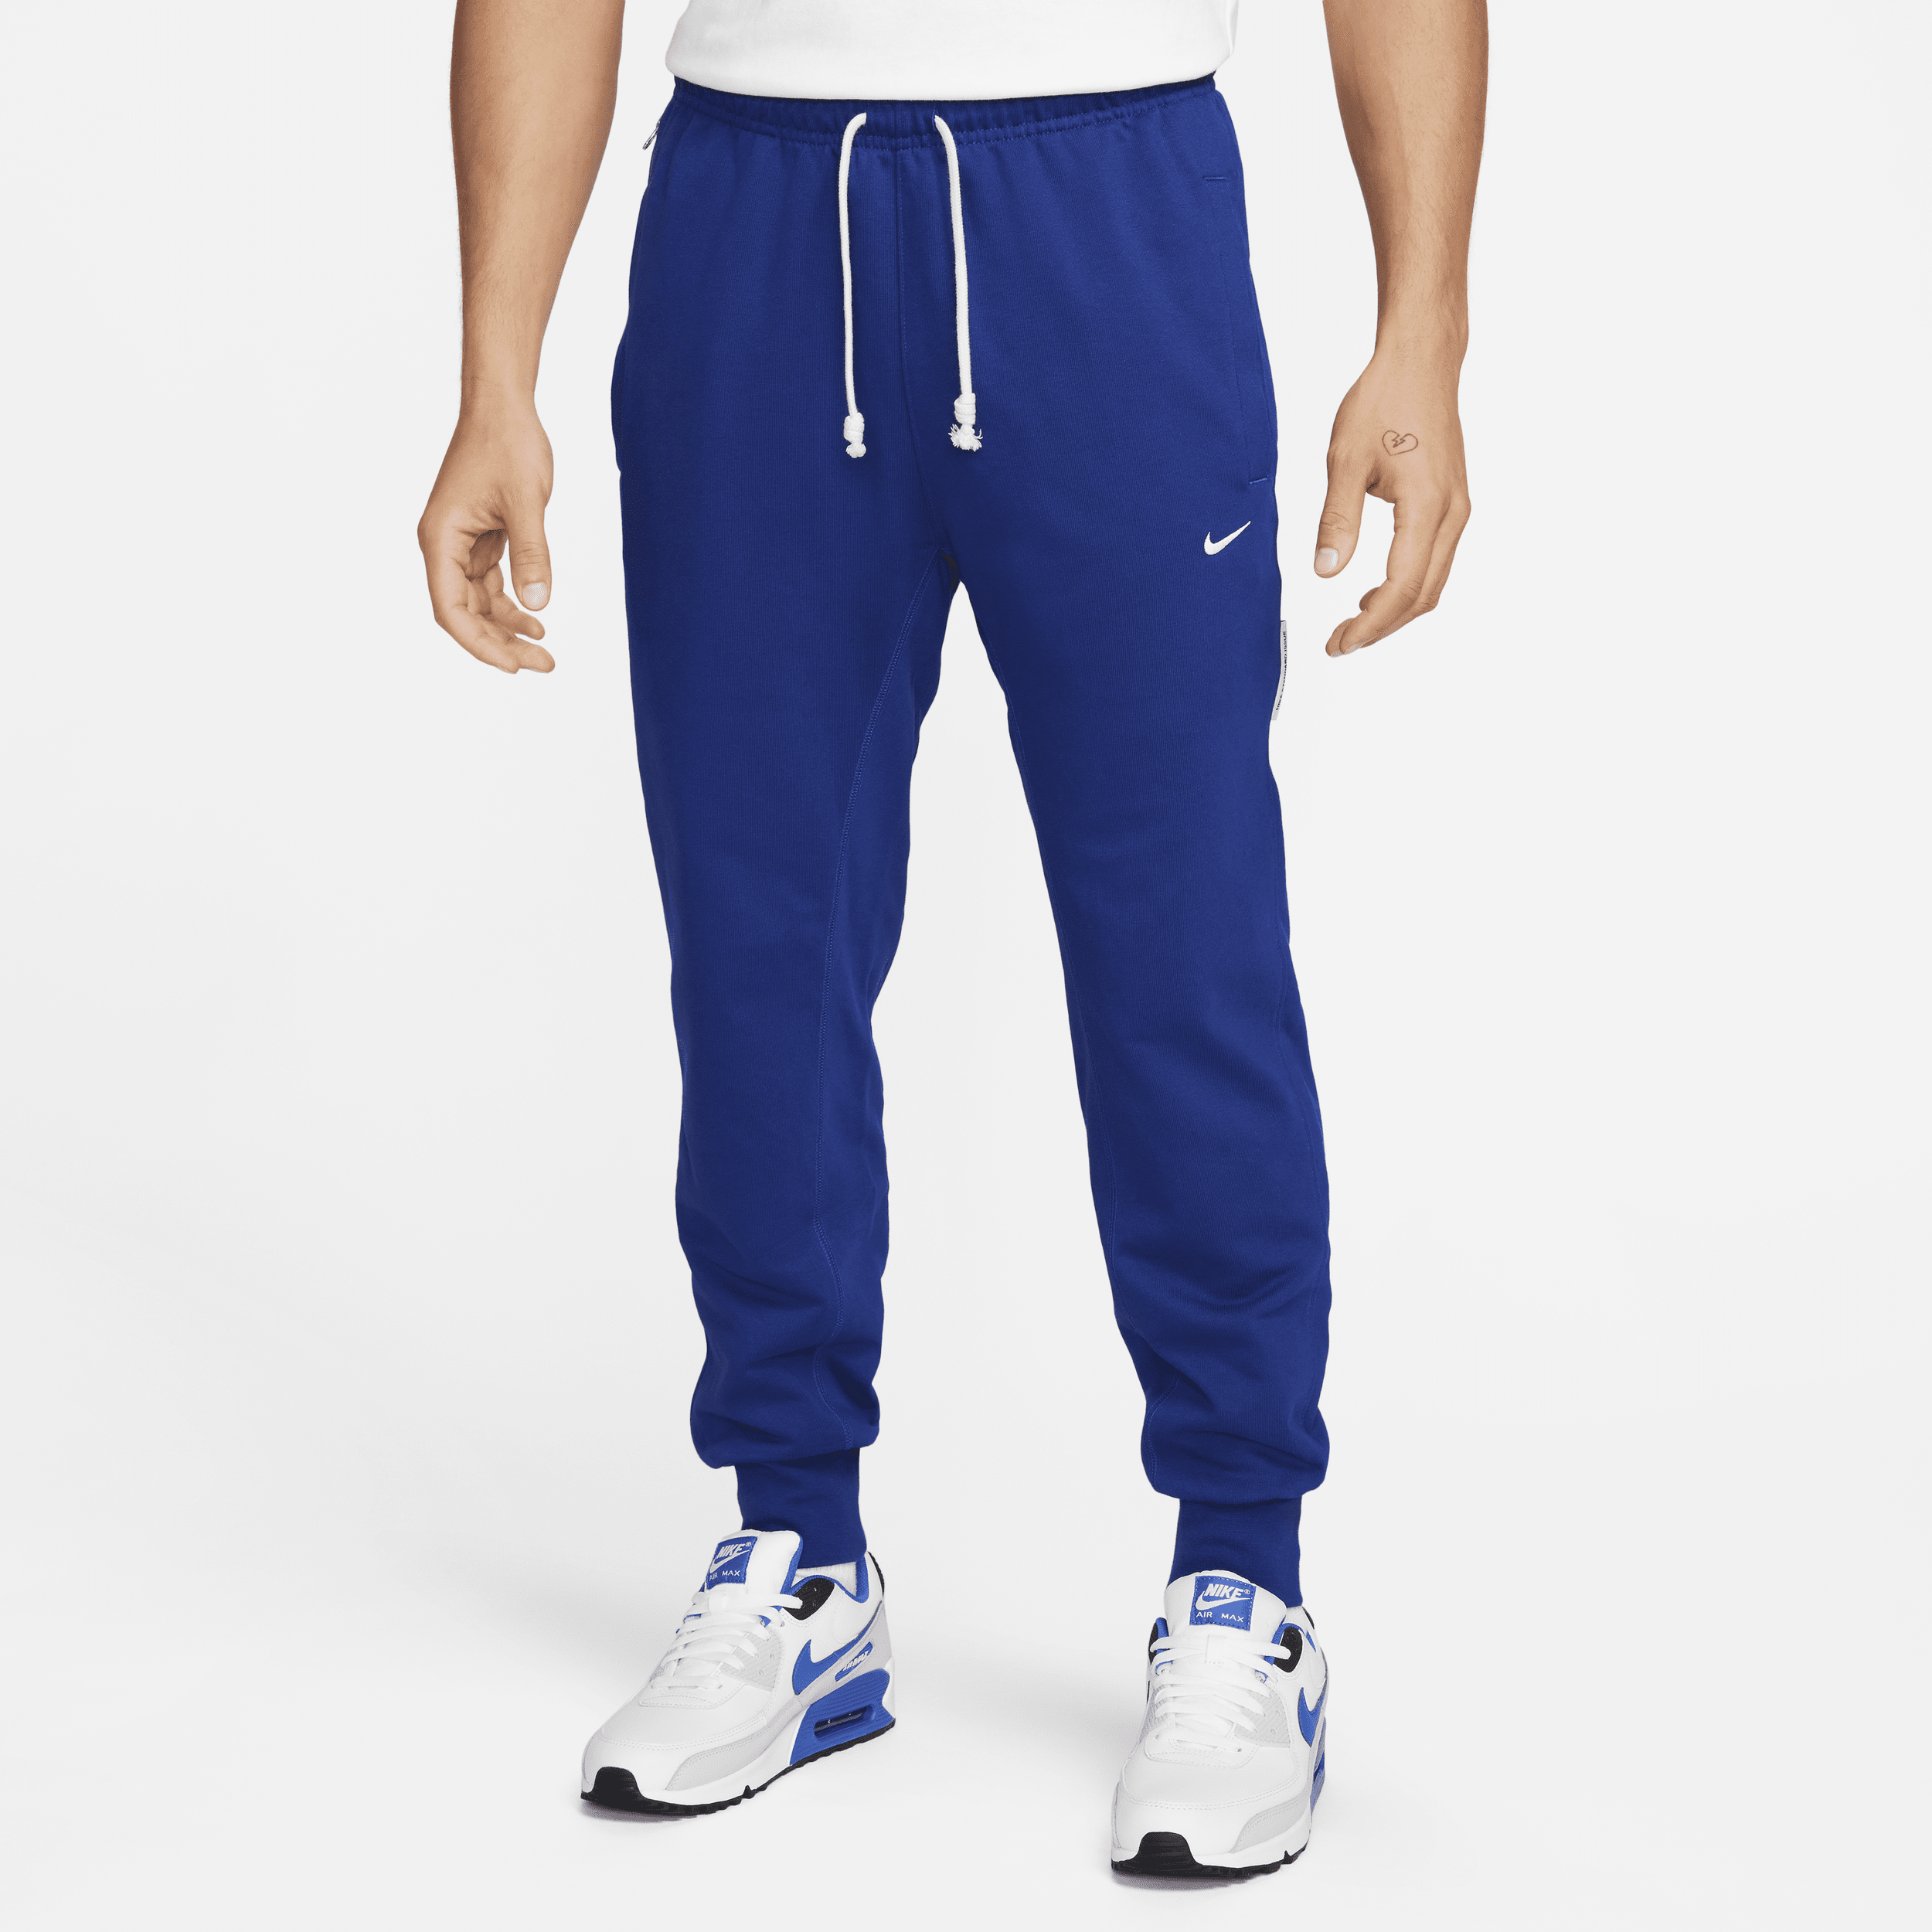 Nike Men's Standard Issue Dri-fit Soccer Pants In Blue